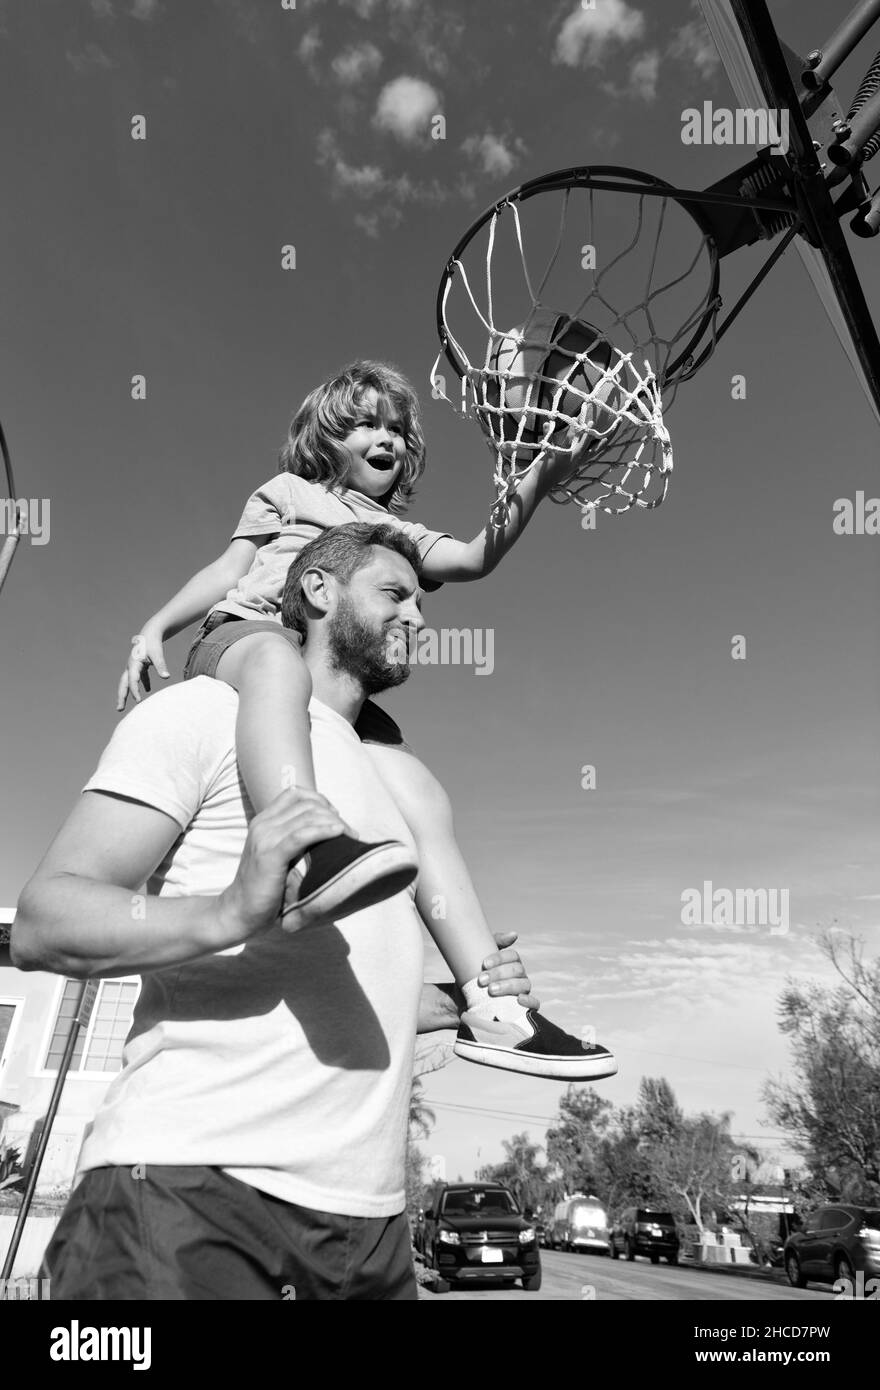 ballon de basket de jeu pour le père et le fils en plein air sur terrain de jeu, sport Banque D'Images